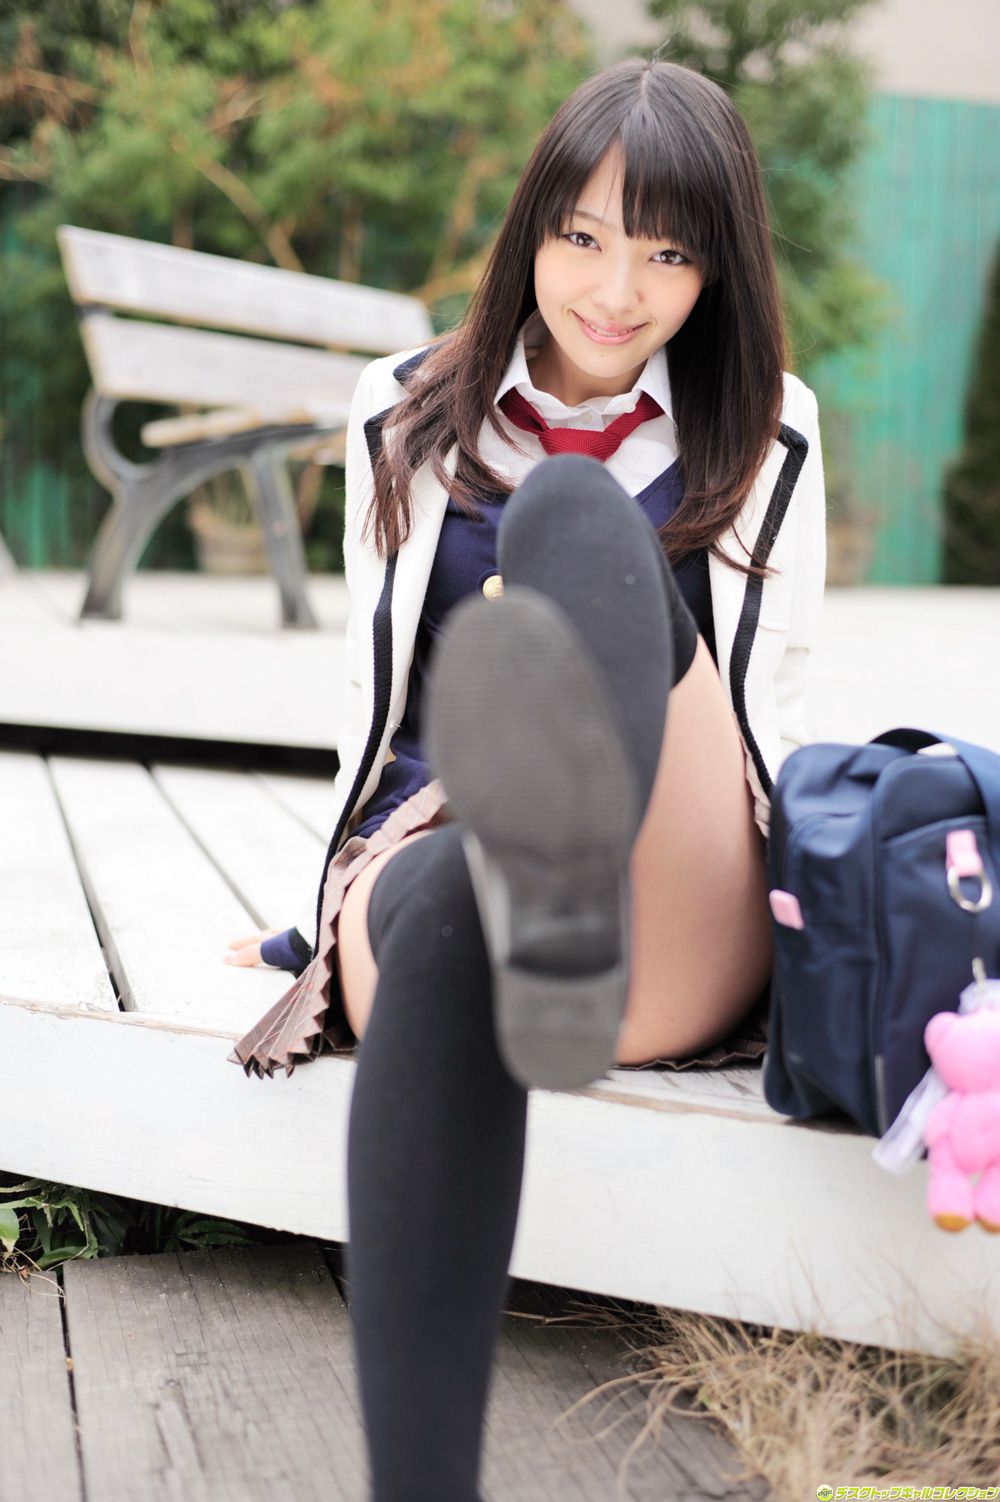 Innocent asian schoolgirl